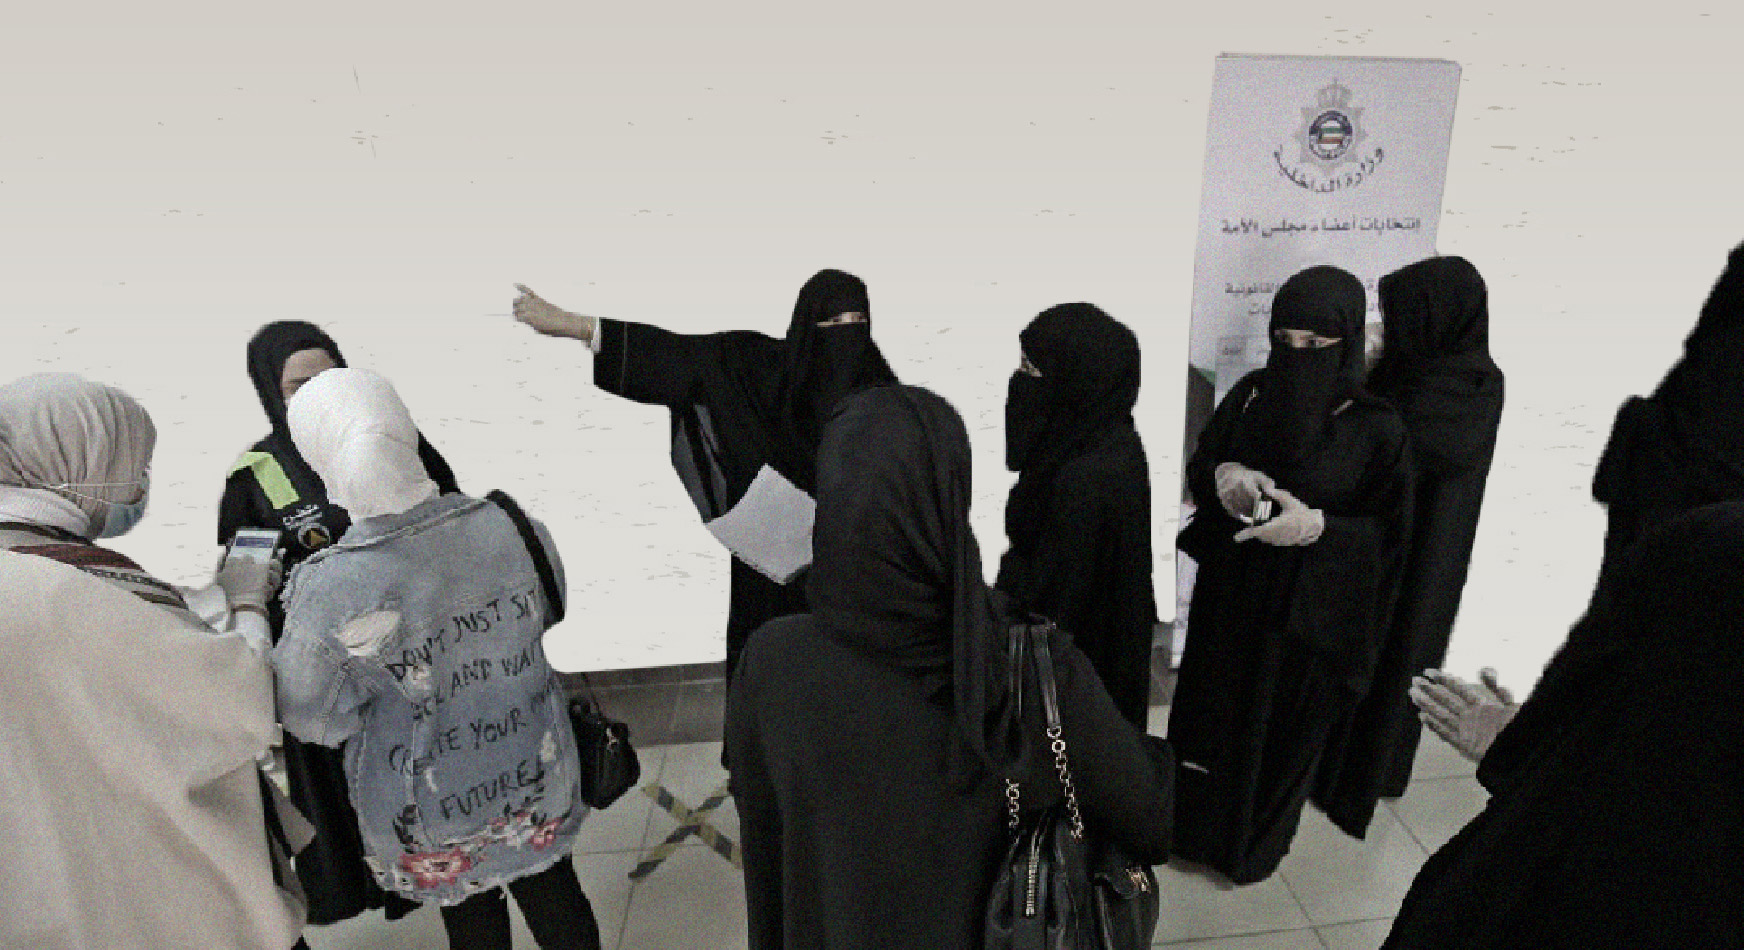 استمرار المعركة الذكورية للسطو على الحقوق السياسية للنساء الكويتيات